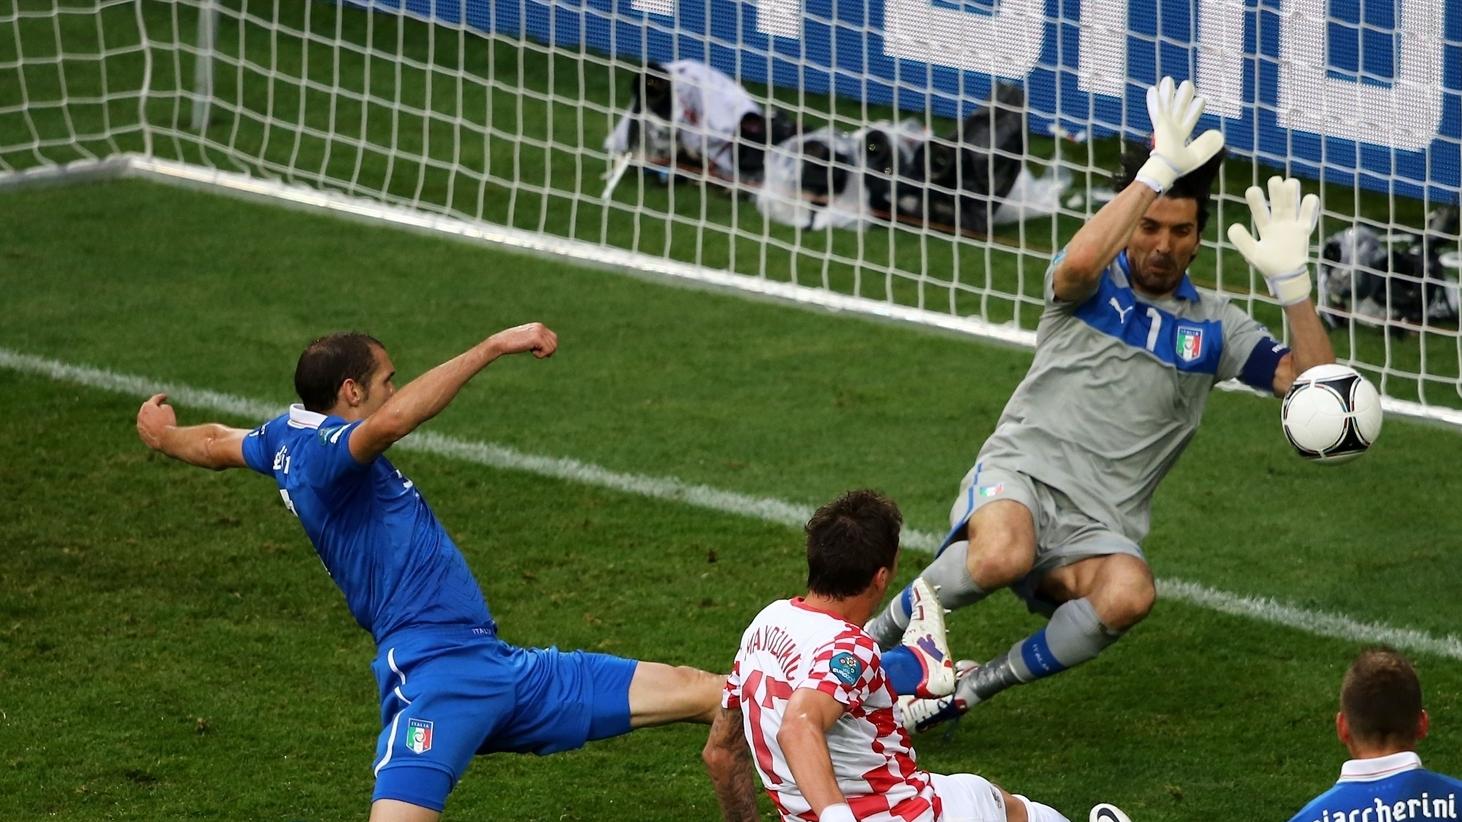 Italy-Croatia | Mandžukić bites back as Croatia deny Italy in EURO 2012 ...